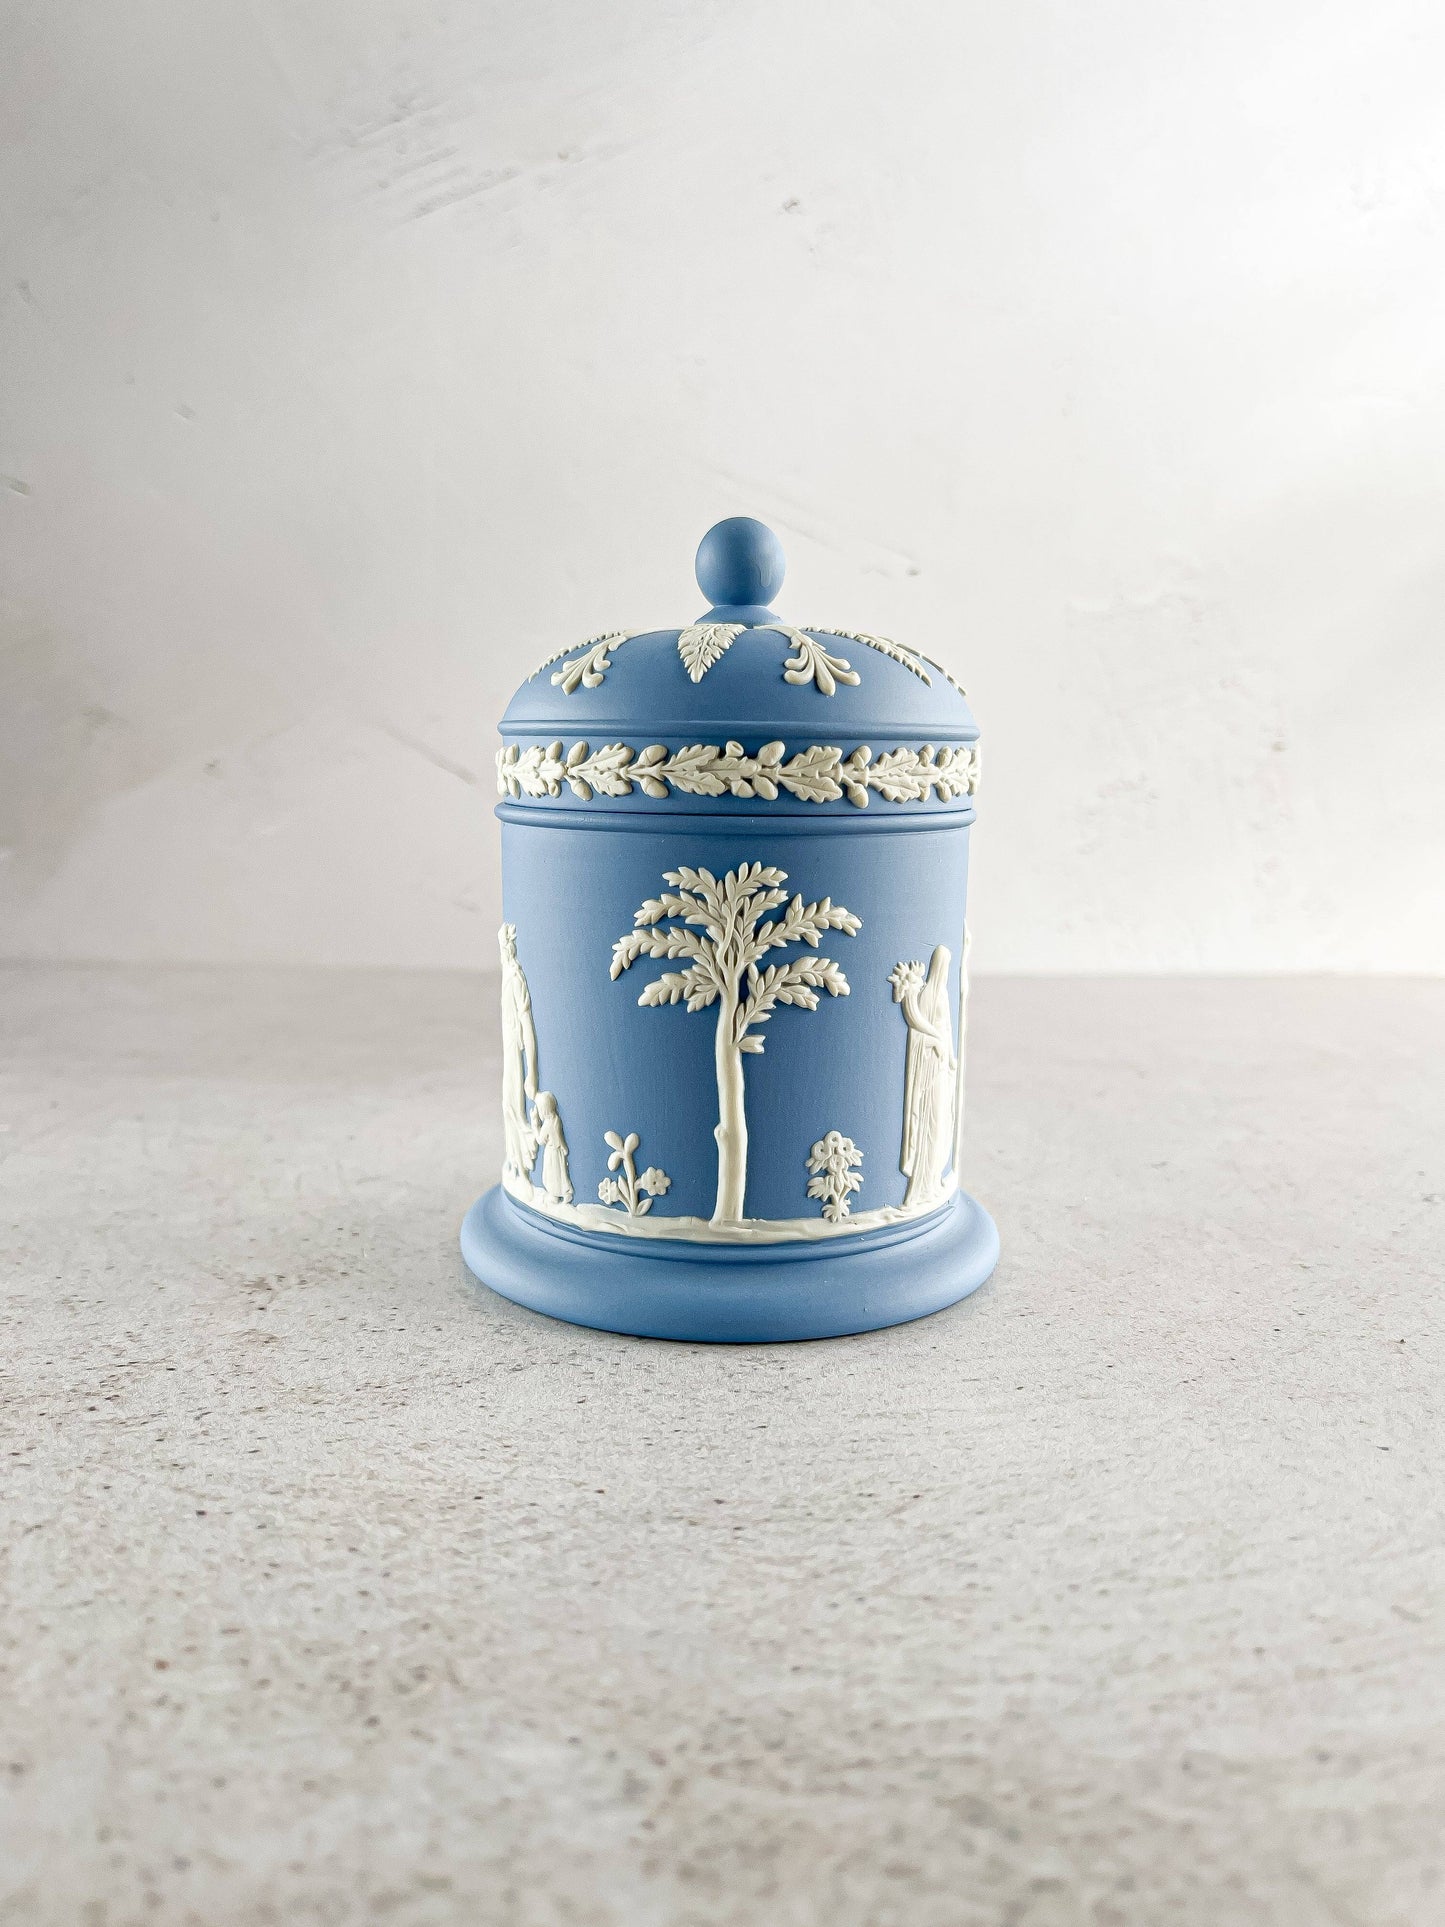 Wedgwood Jasperware Pale Blue Jar & Lid - Versatile Elegance - SOSC Home